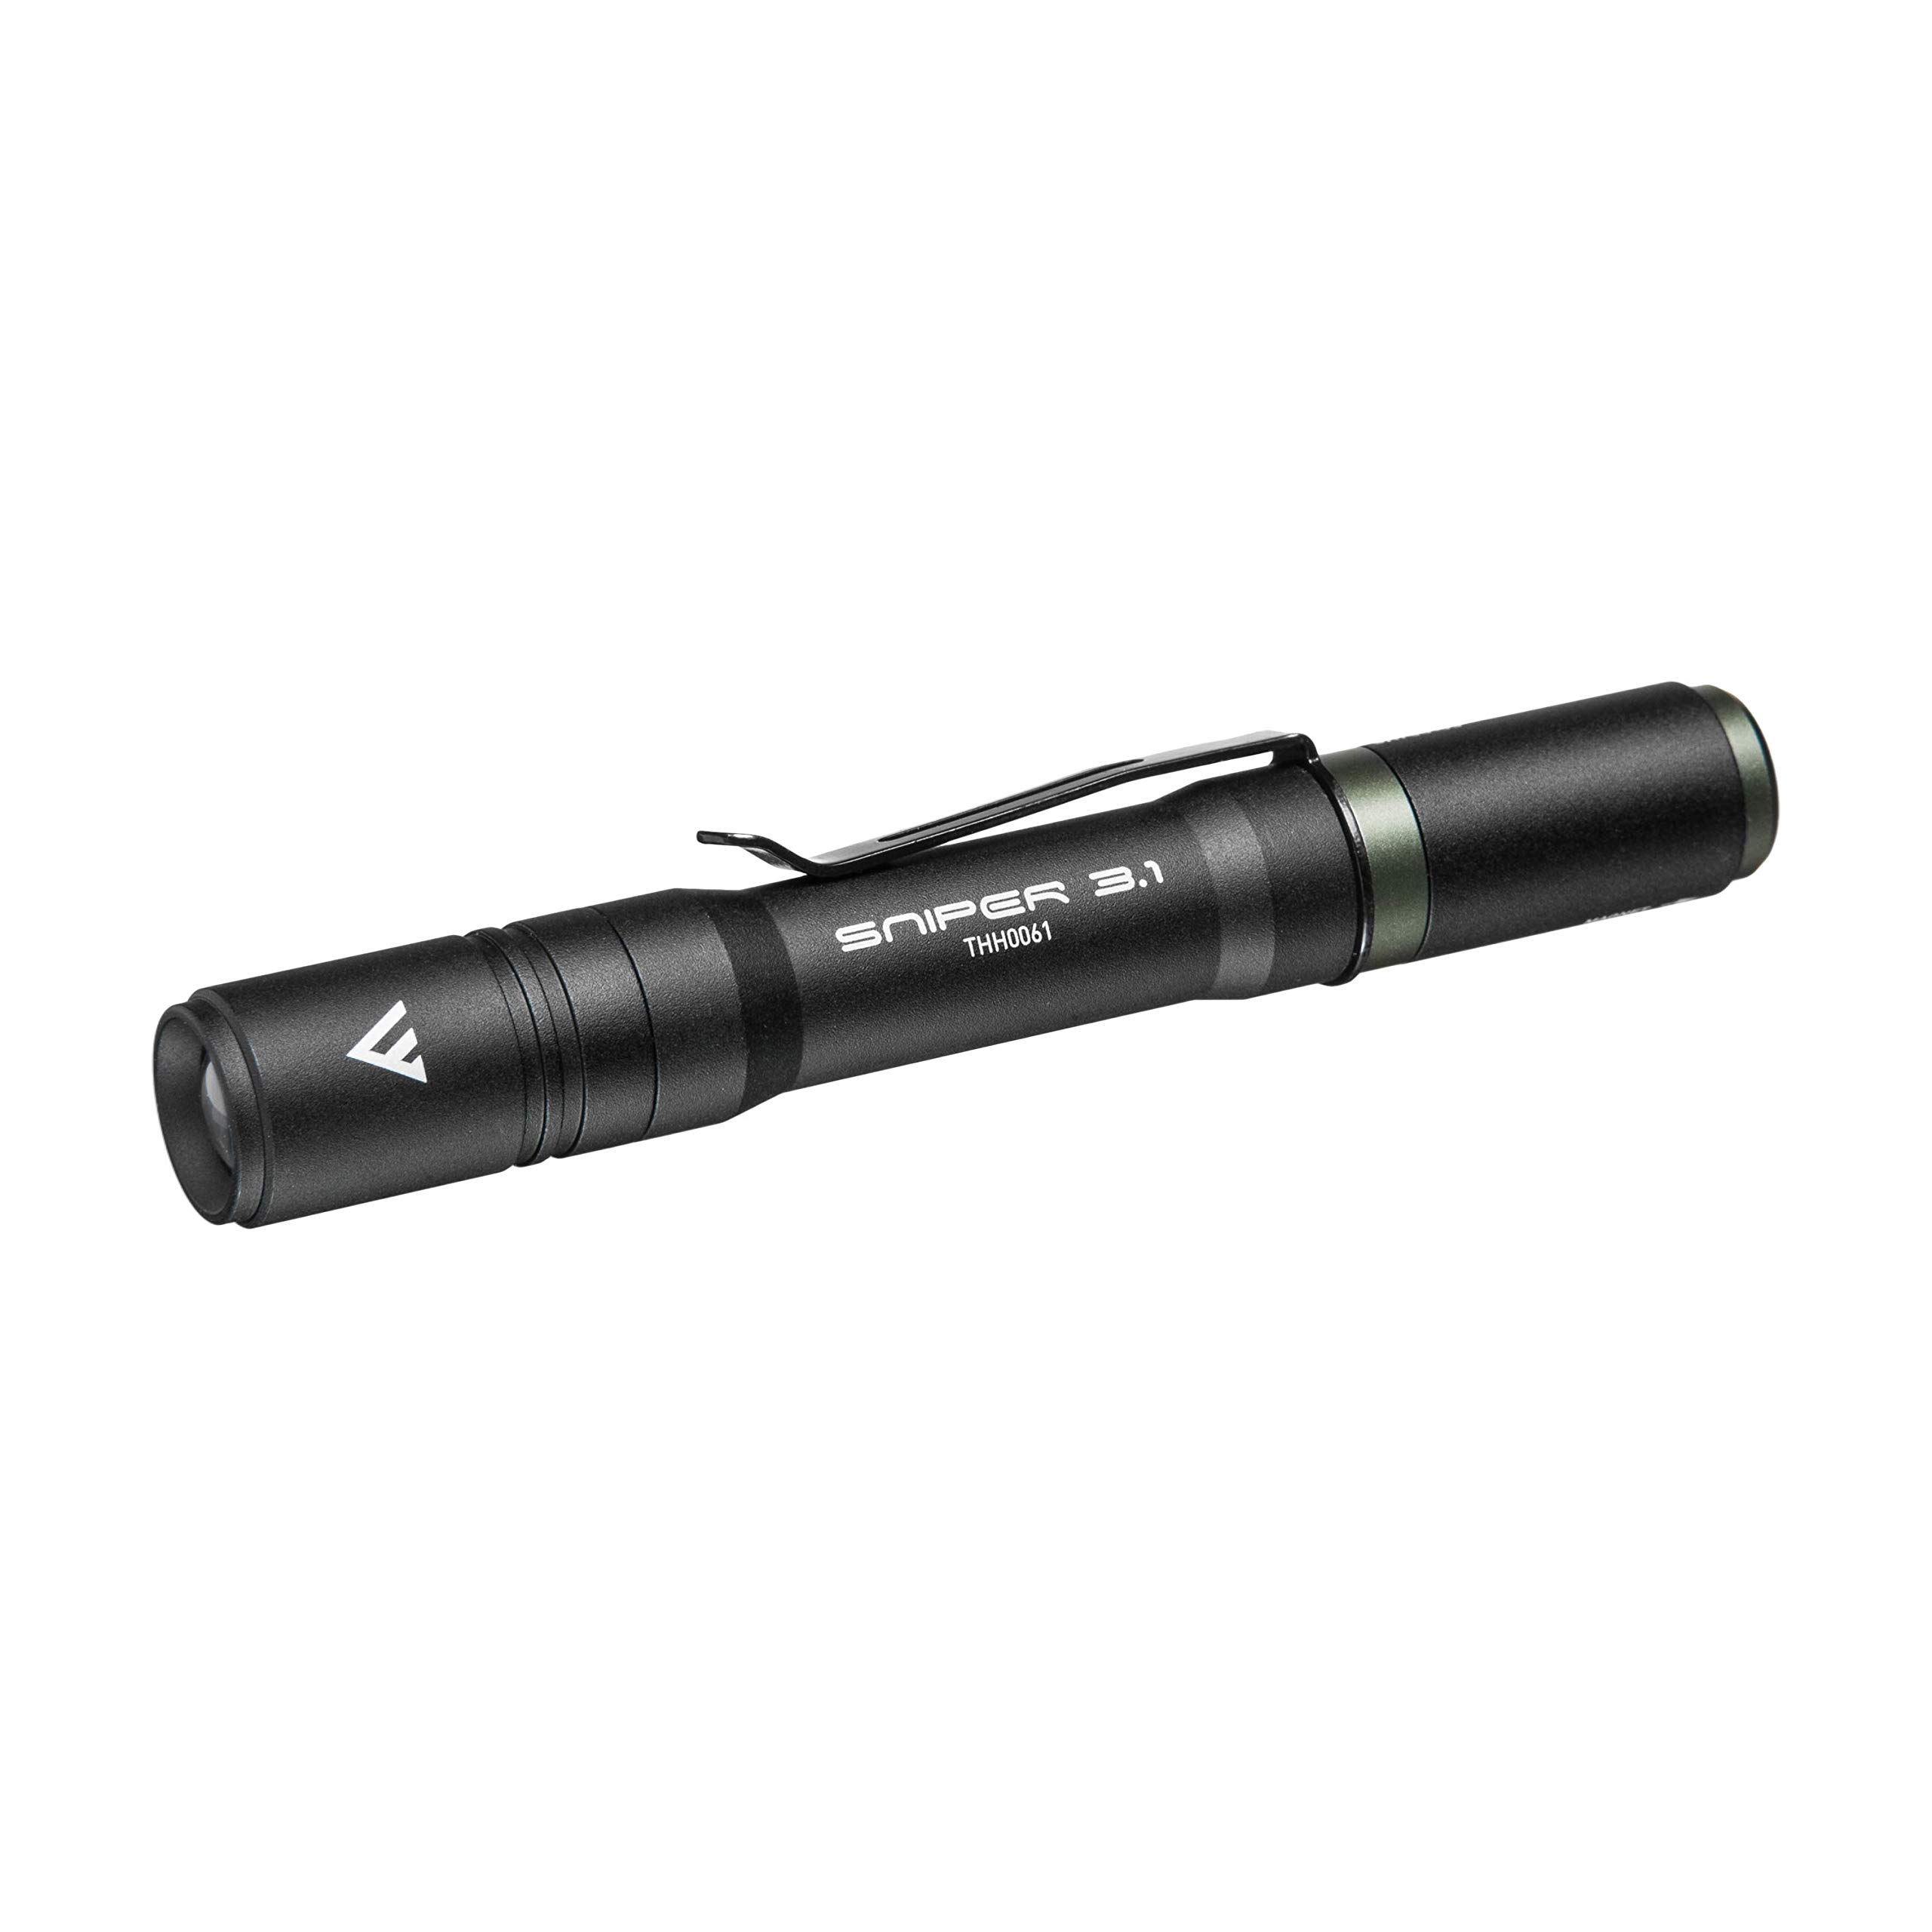 Mactronic Sniper 3.1 Taktische Mini LED-Taschenlampe 130 Lumen | Li-Ionen Akku und USB-Ladekabel | Gewicht 52 g mit Akku, stoßfest bis 2 m, Schutzart IP64, Leuchtweite 37 m, 3 Betriebsarten